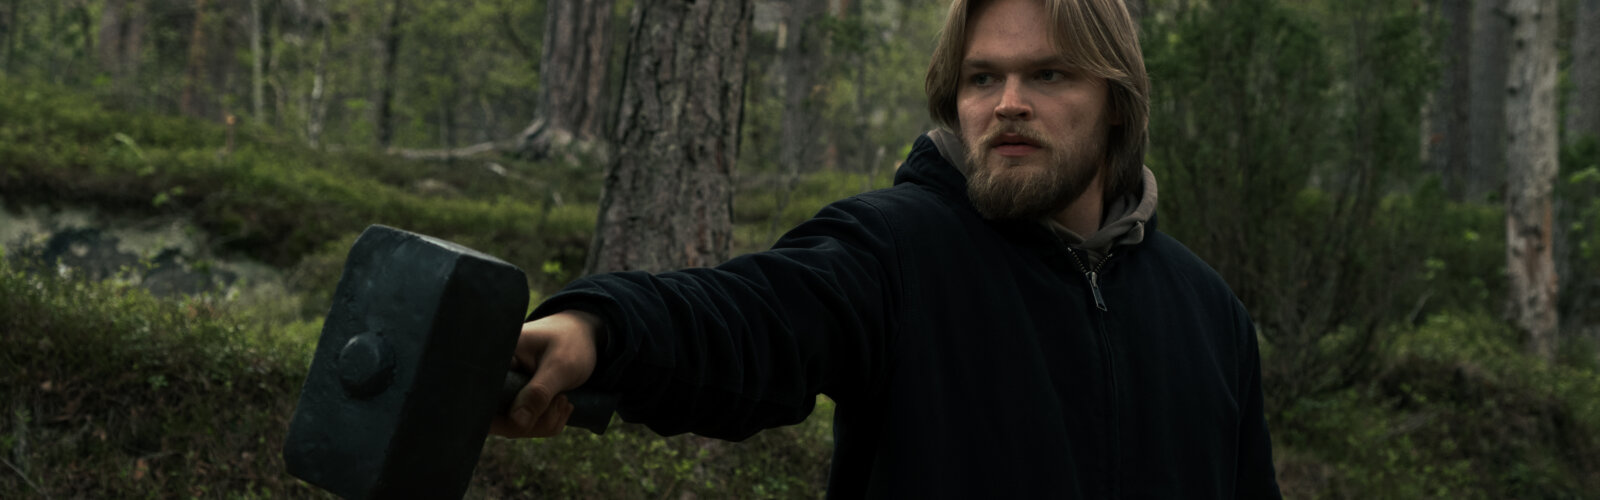 David Stakston als Magne in der Netflix-Serie Ragnarök